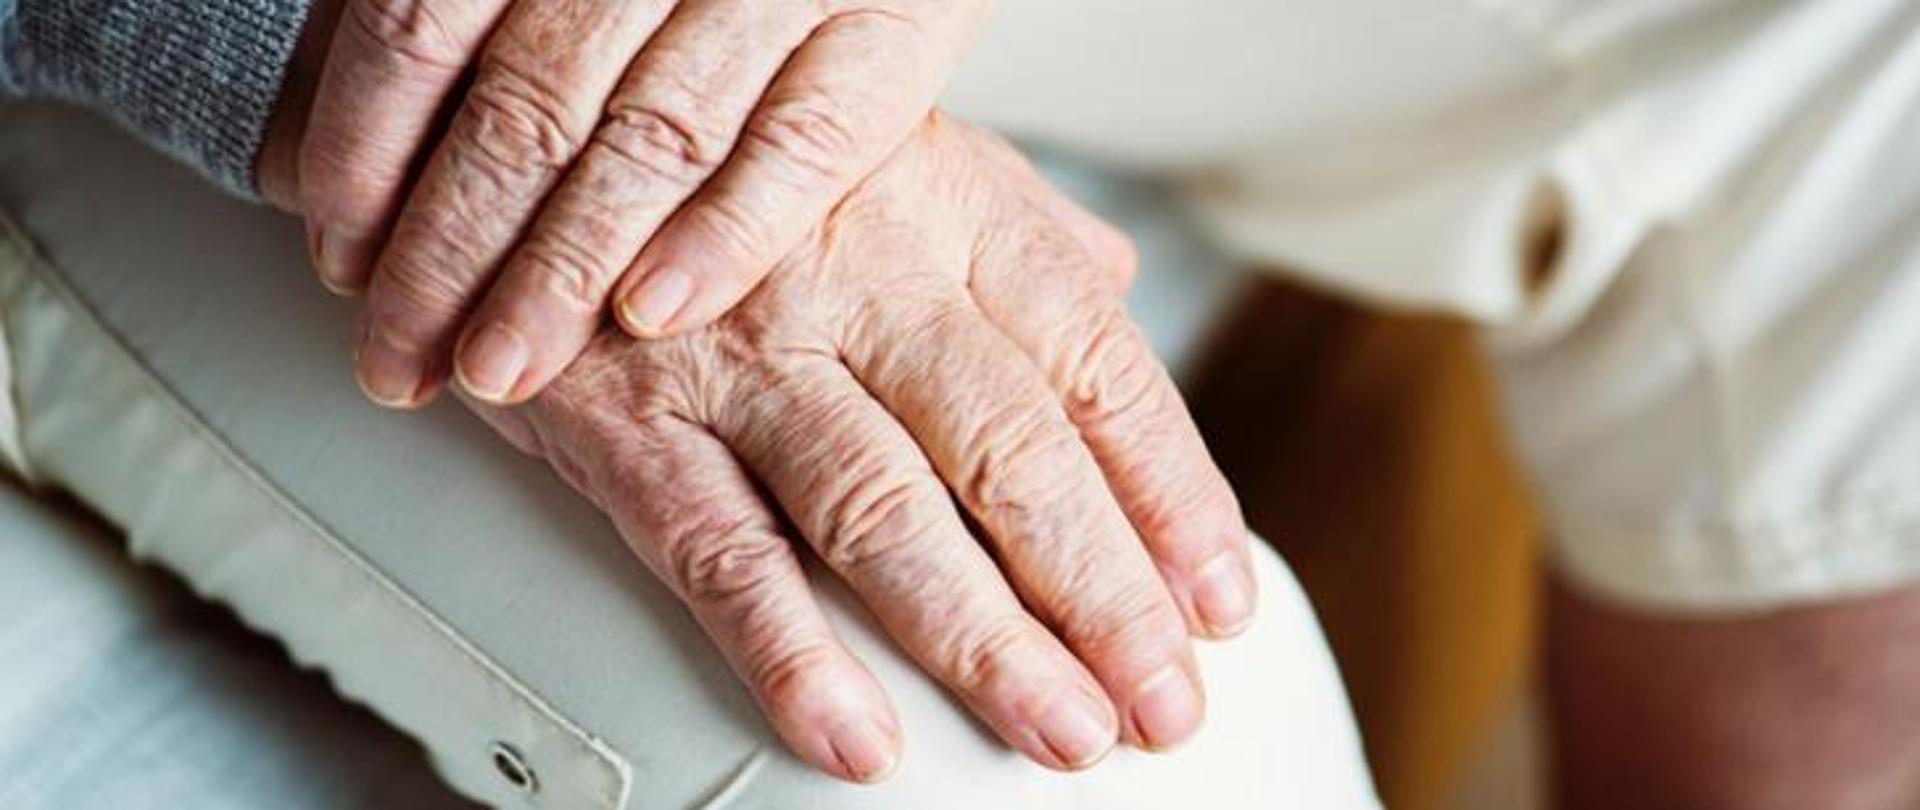 Zdjęcie poglądowe: dłonie starszej osoby